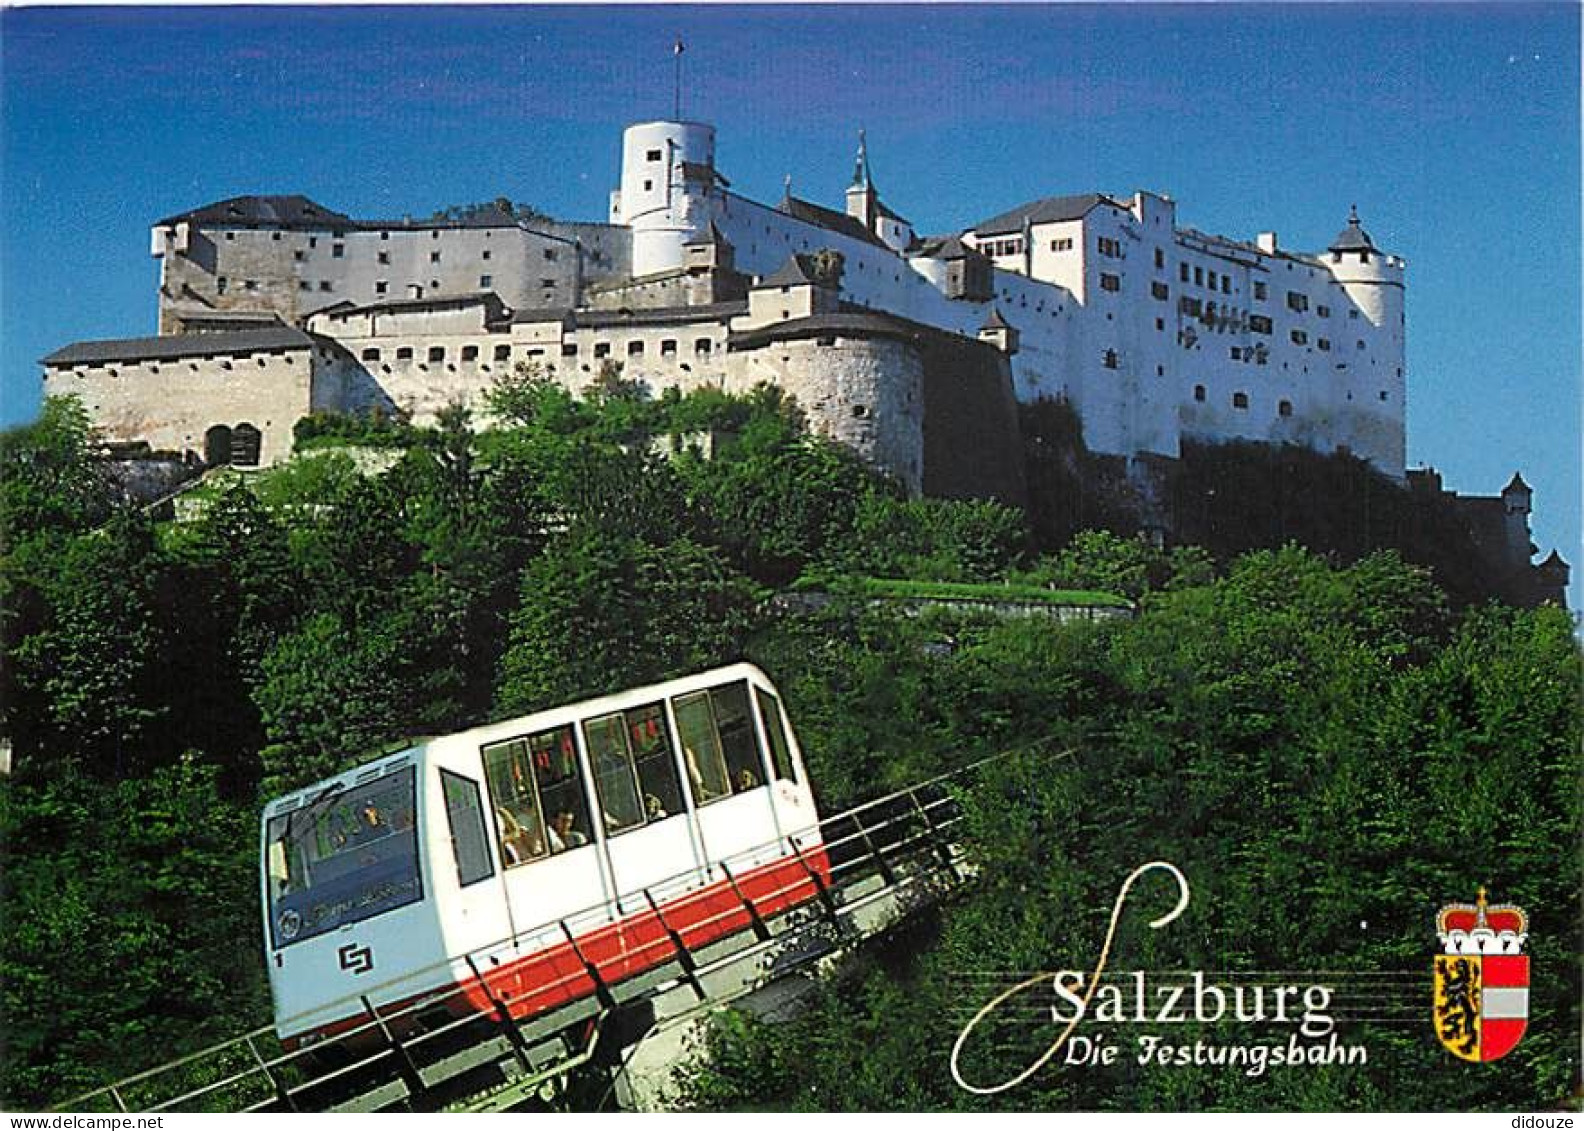 Trains - Funiculaires - Autriche - Austria - Salzburg - Festung Hohensalzburg Und Festungsbahn - Forteresse Du Hohensalz - Funicular Railway